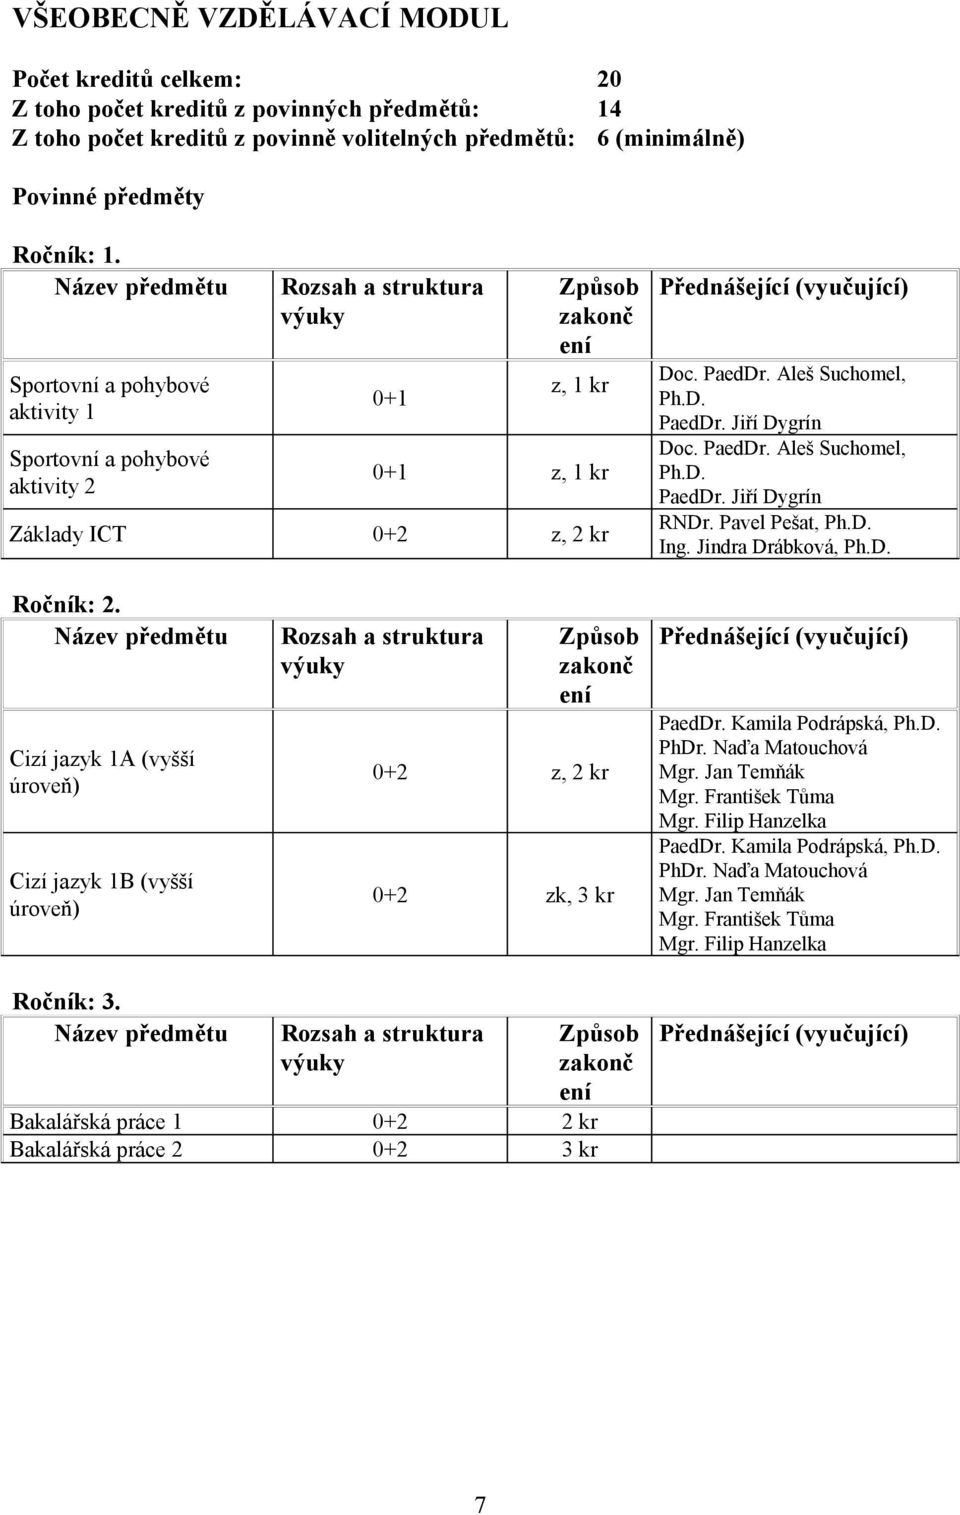 Pavel Pešat, Ph.D. Ing. Jindra Drábková, Ph.D. Ročník: 2. Cizí jazyk 1A (vyšší úroveň) Cizí jazyk 1B (vyšší úroveň) č 0+2 z, 2 kr 0+2 zk, 3 kr PaedDr. Kamila Podrápská, Ph.D. PhDr.